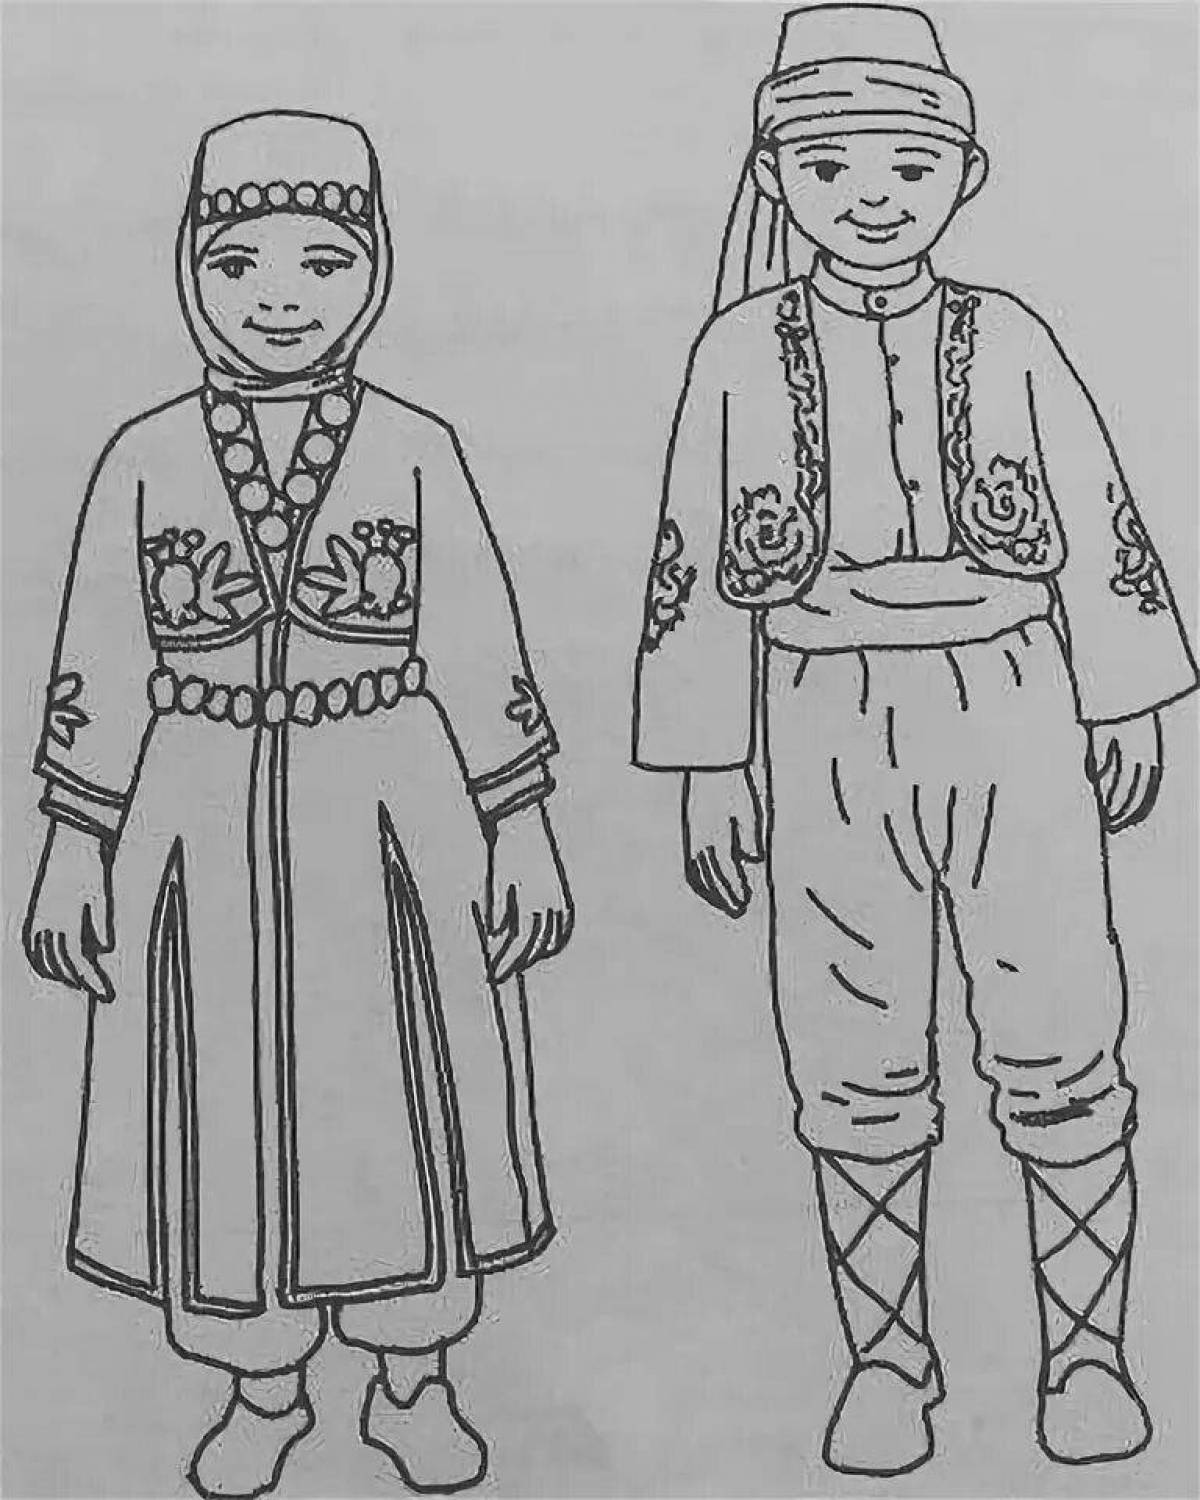 удмуртский национальный костюм картинки для детей